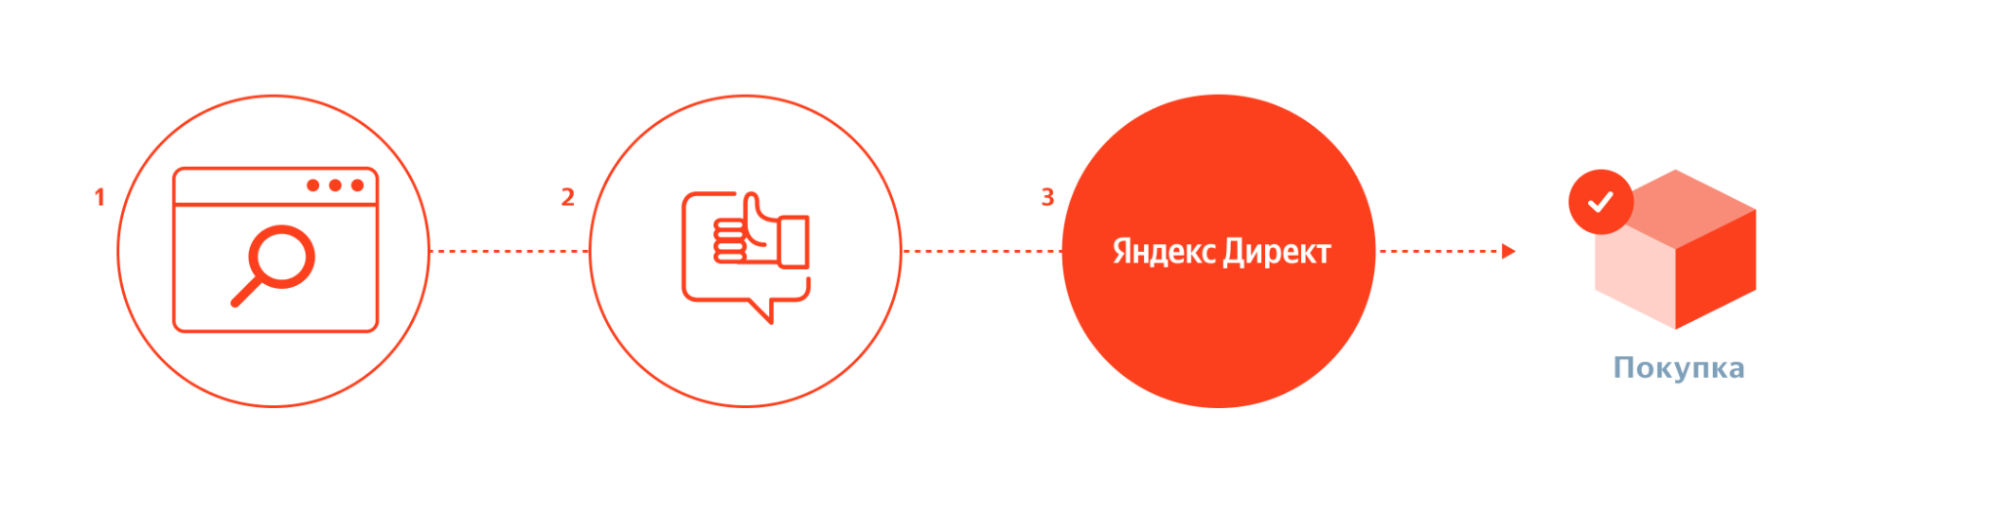 Яндекс.Метрика и Директ начали учитывать переходы со всех устройств пользователя на пути к конверсии